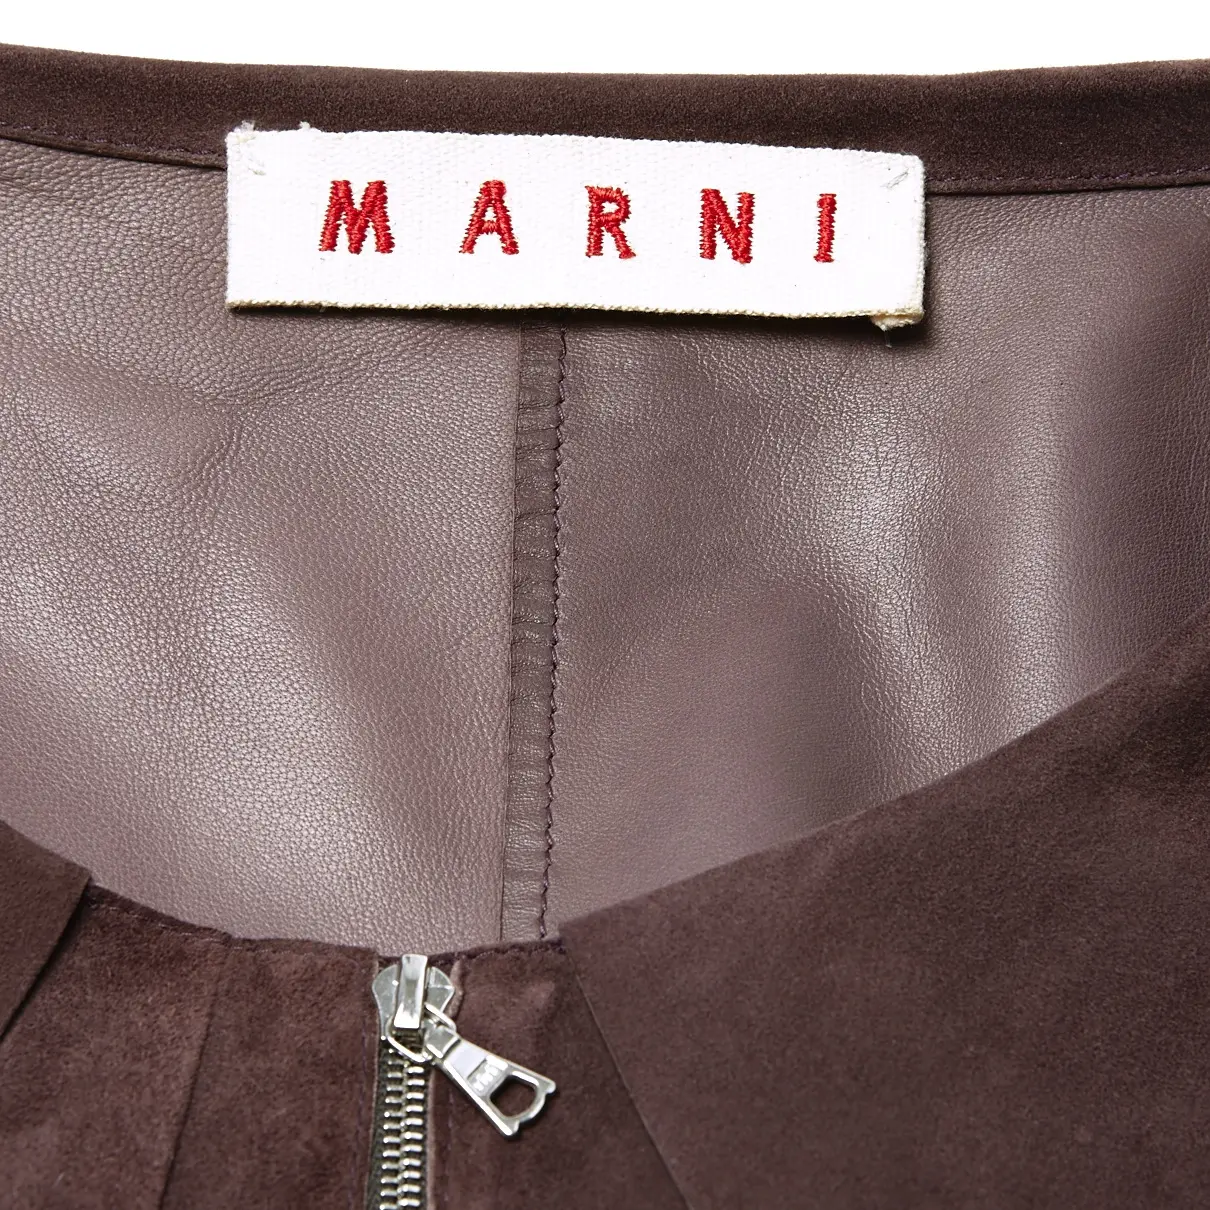 Buy Marni Jacket online